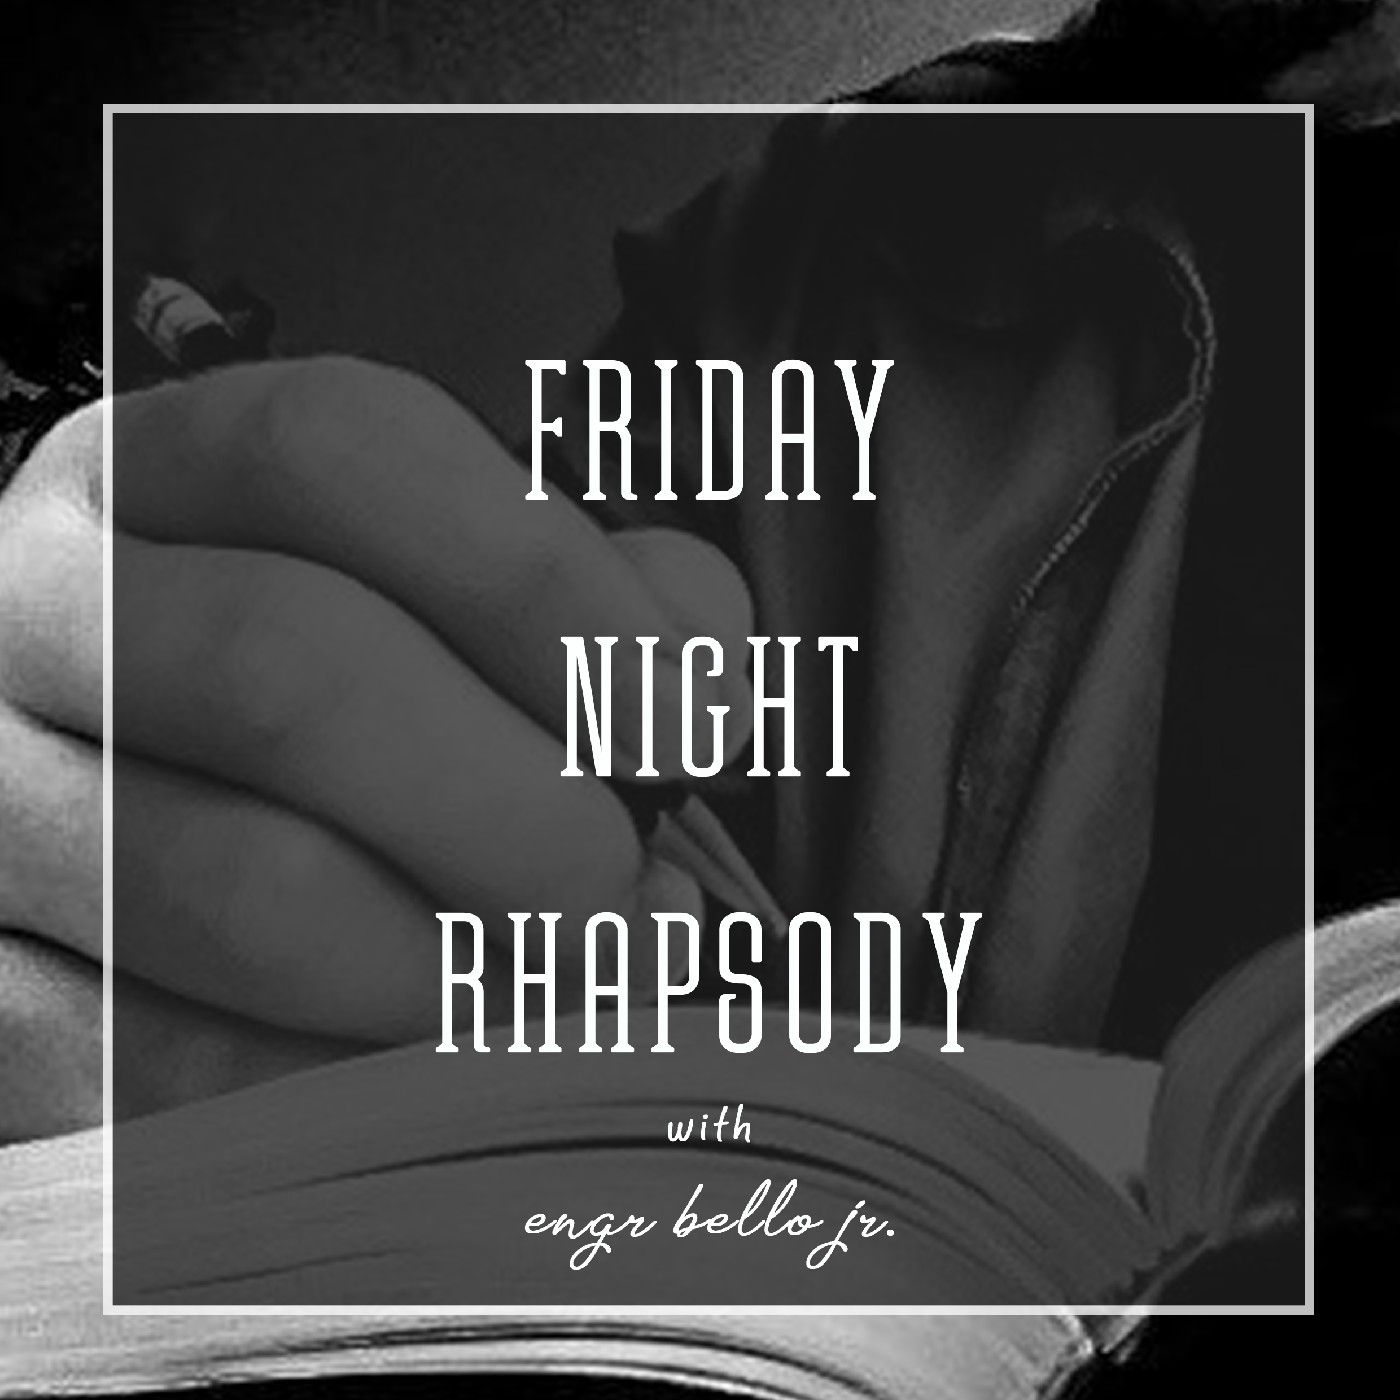 Friday Night Rhapsody